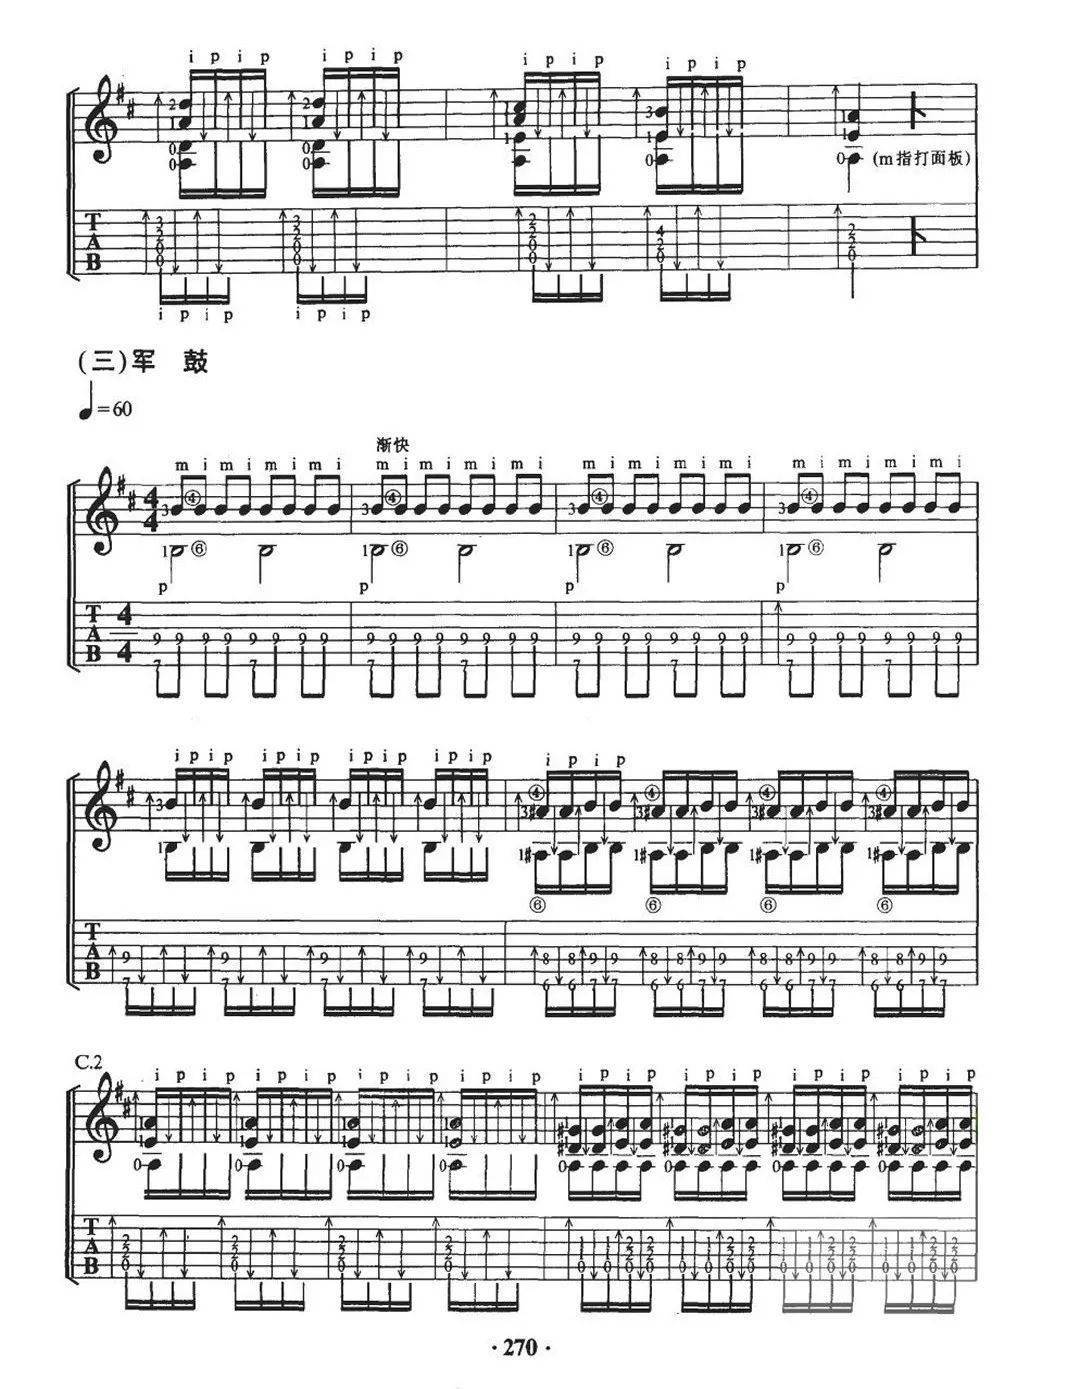 一把古典吉他演奏:《十面埋伏》中国经典古曲